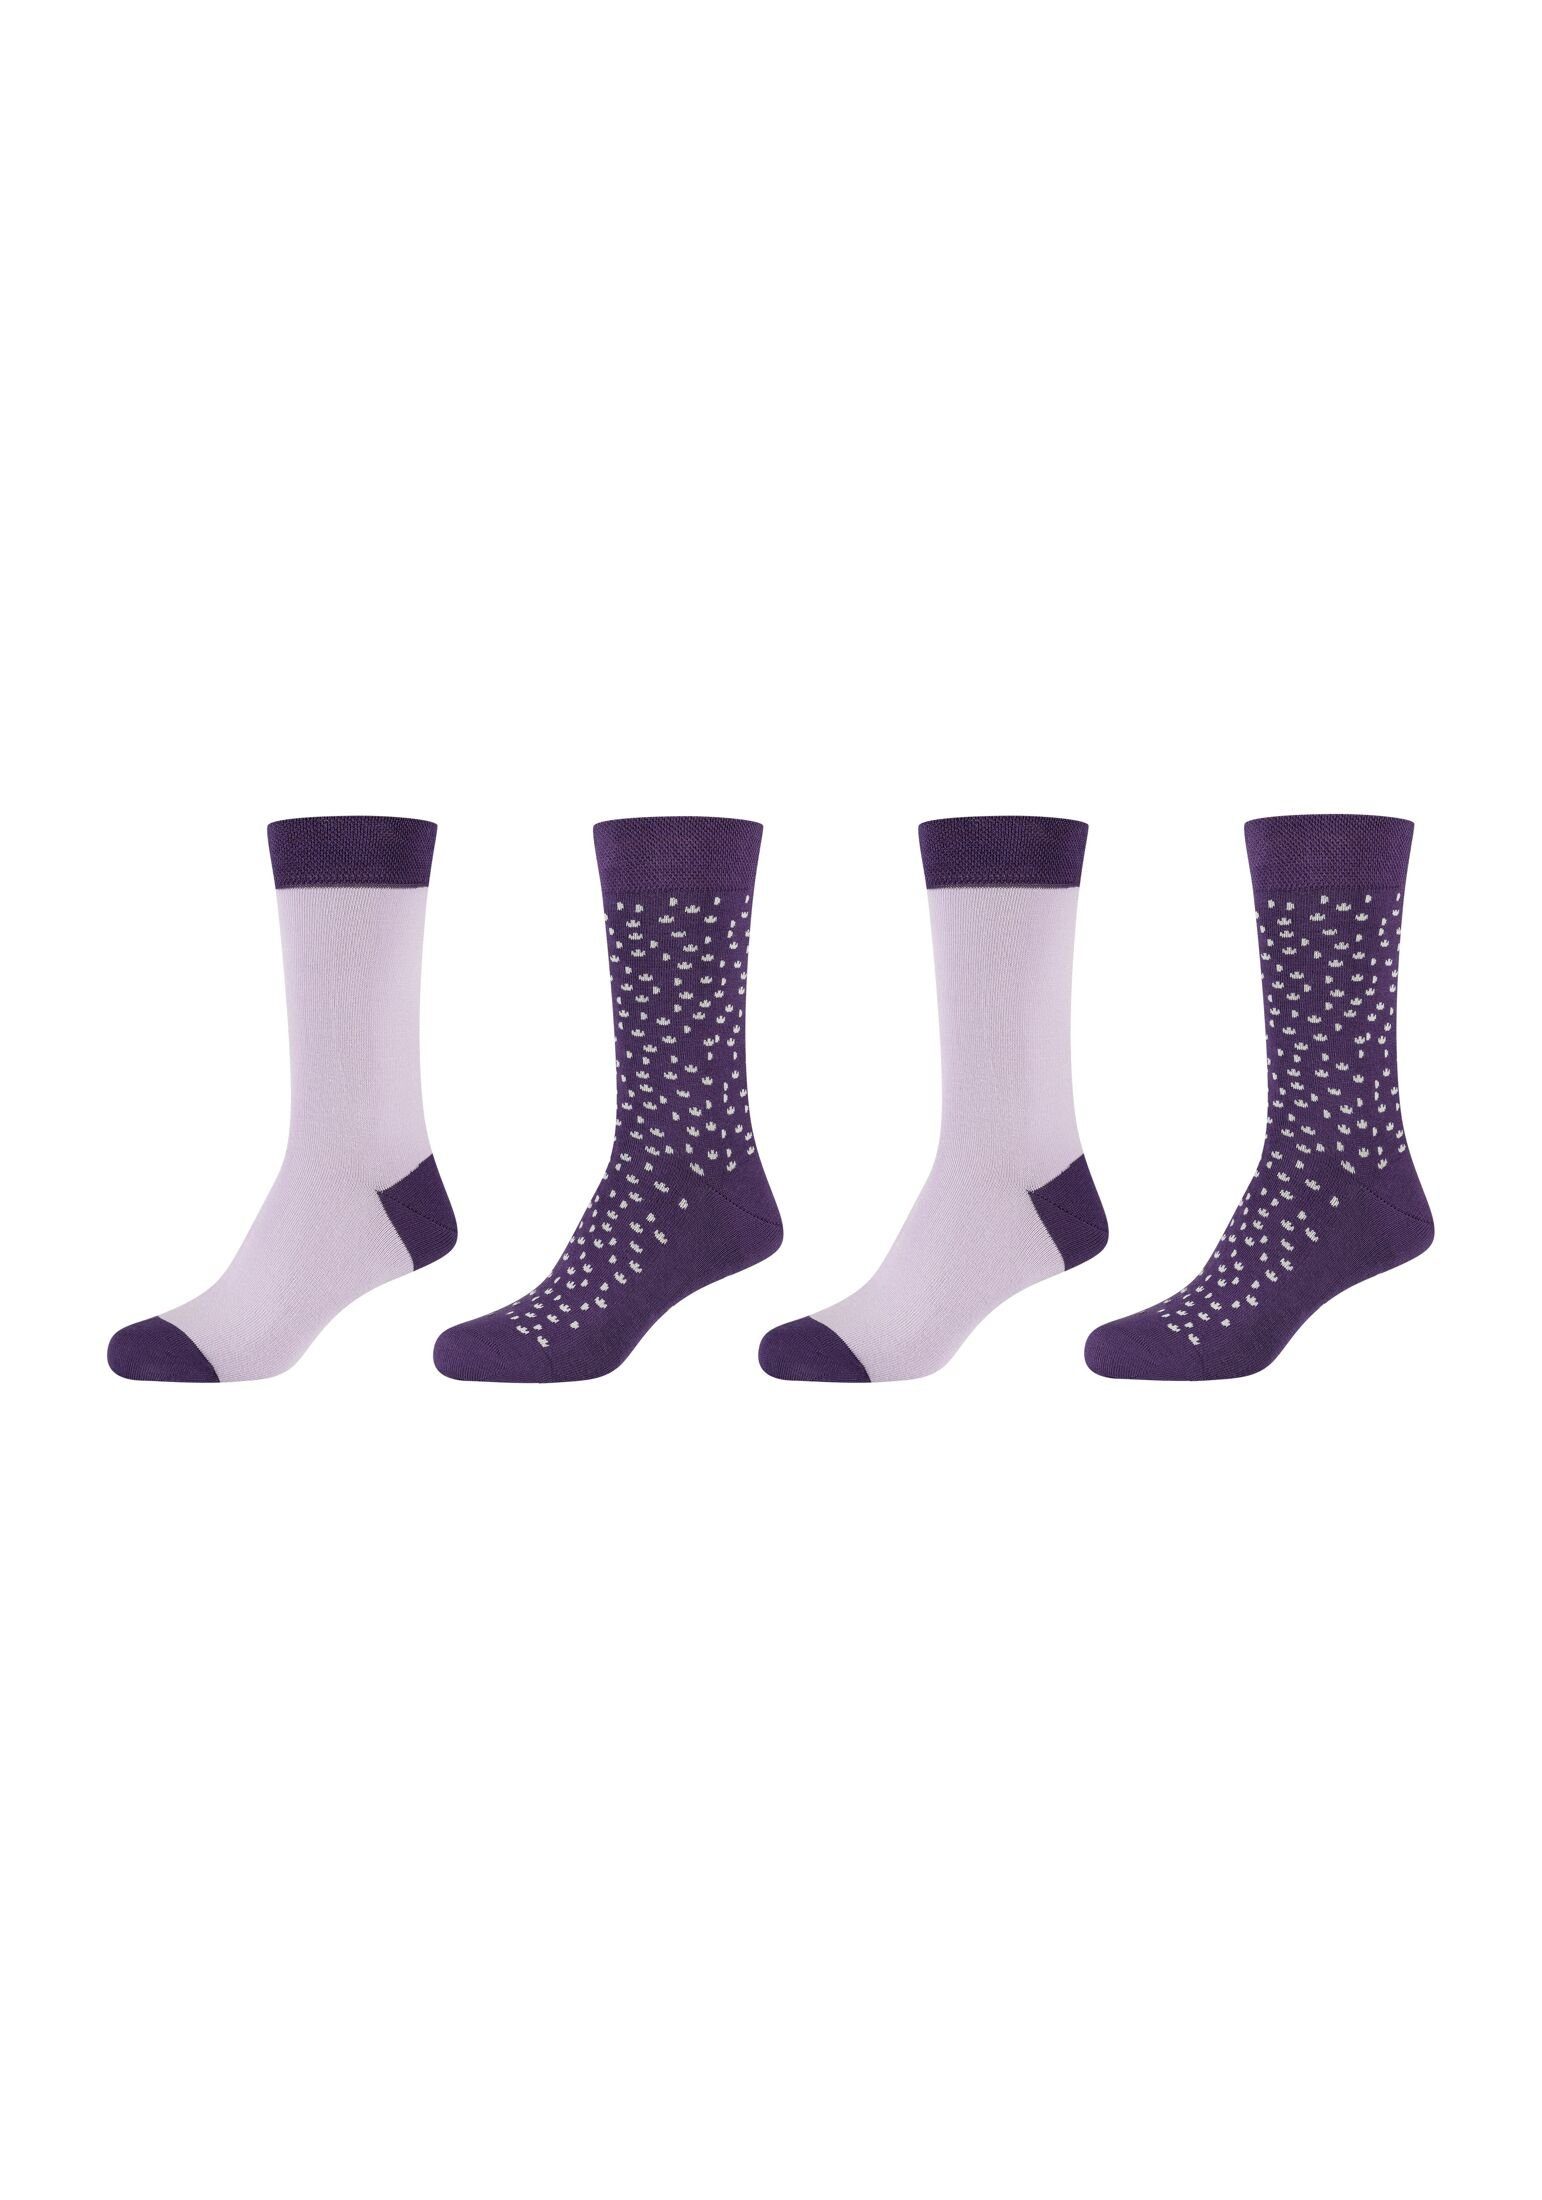 Camano Socken Socken 4er Pack purple mulberry